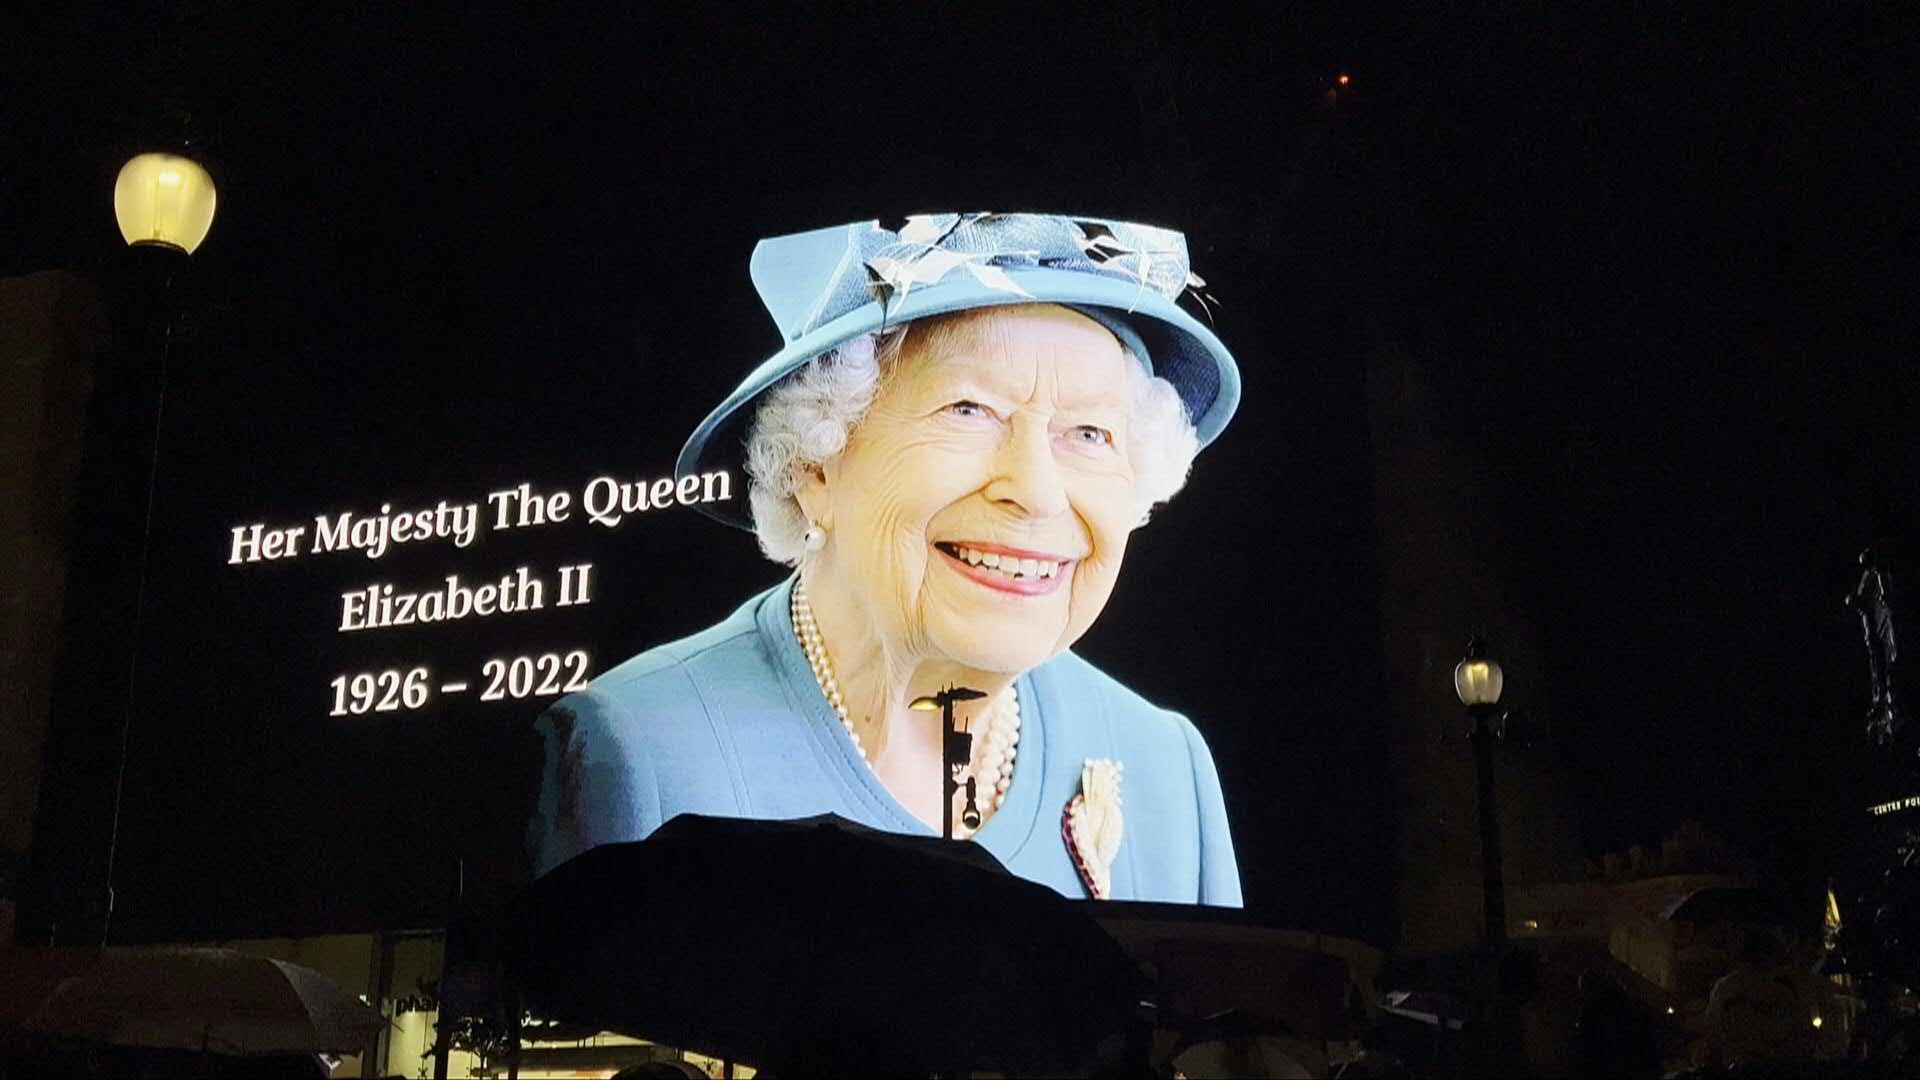 La reina Isabel II, jefa de Estado del Reino Unido y 14 países de la Commonwealth, falleció el jueves a los 96 años tras siete décadas de reinado en los que capeó numerosas crisis de una monarquía que ahora abre un nuevo capítulo.